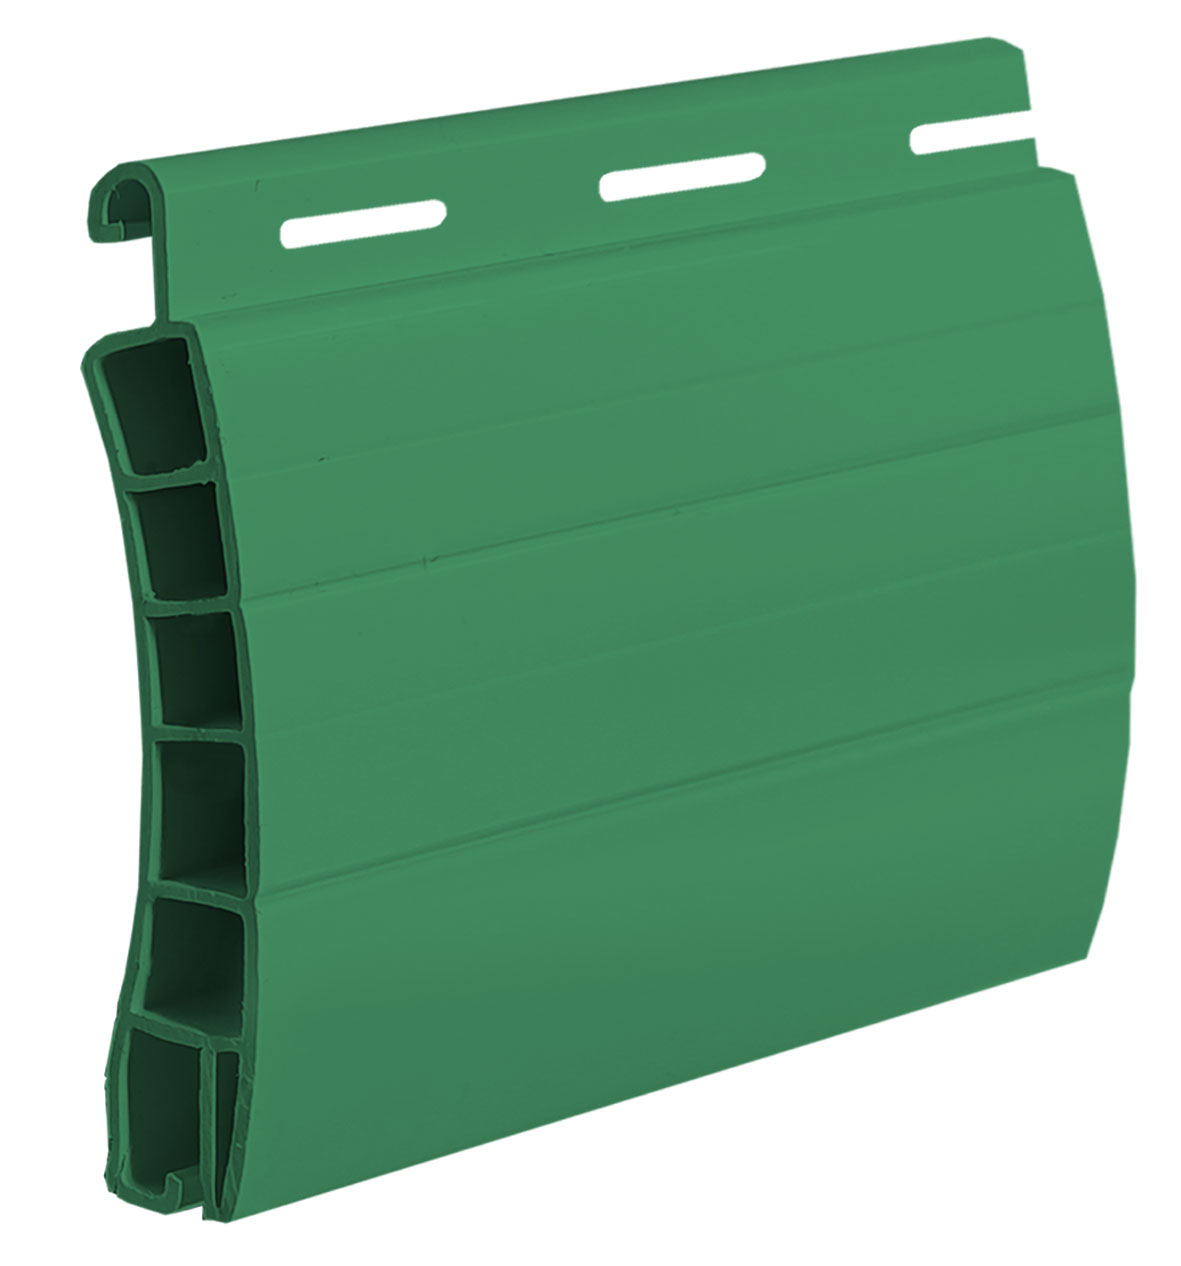  34 Verde Menta - Avvolgibile PVC - FIBREGLASS